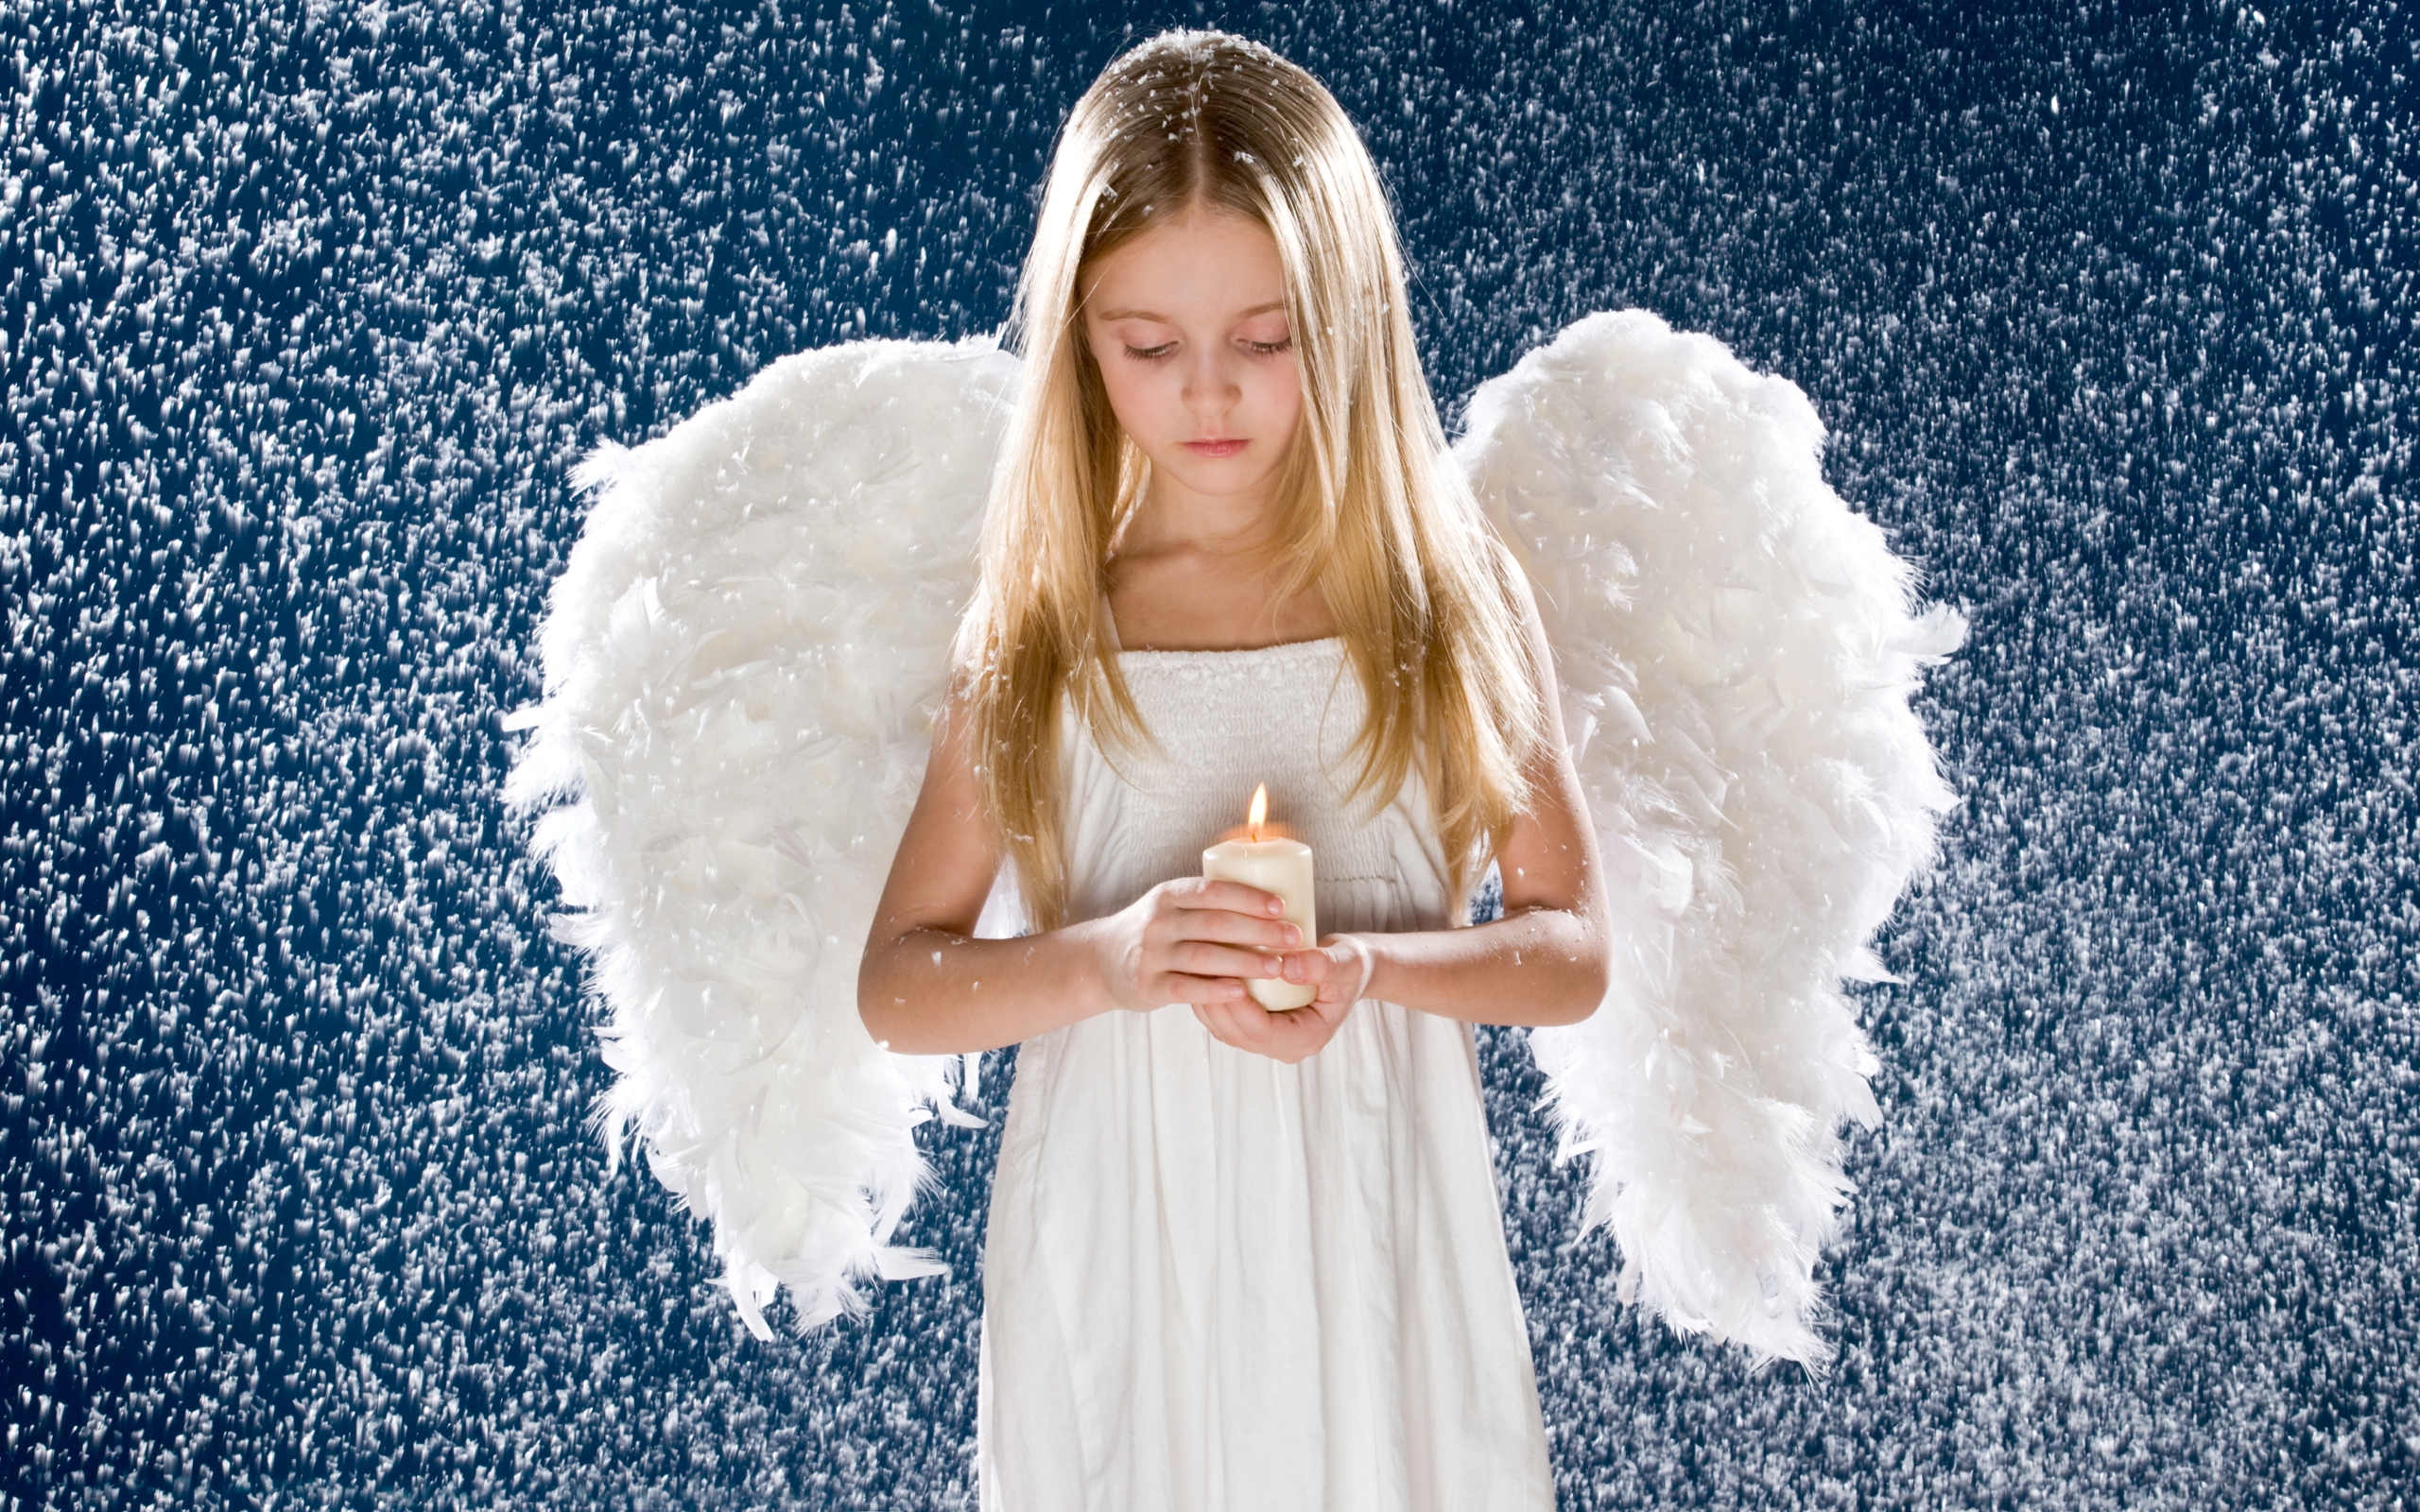 Скачать картинку Ангел, Ребенок, Фотографии в телефон бесплатно.